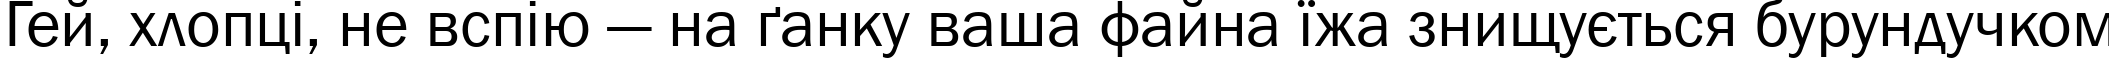 Пример написания шрифтом font150 текста на украинском